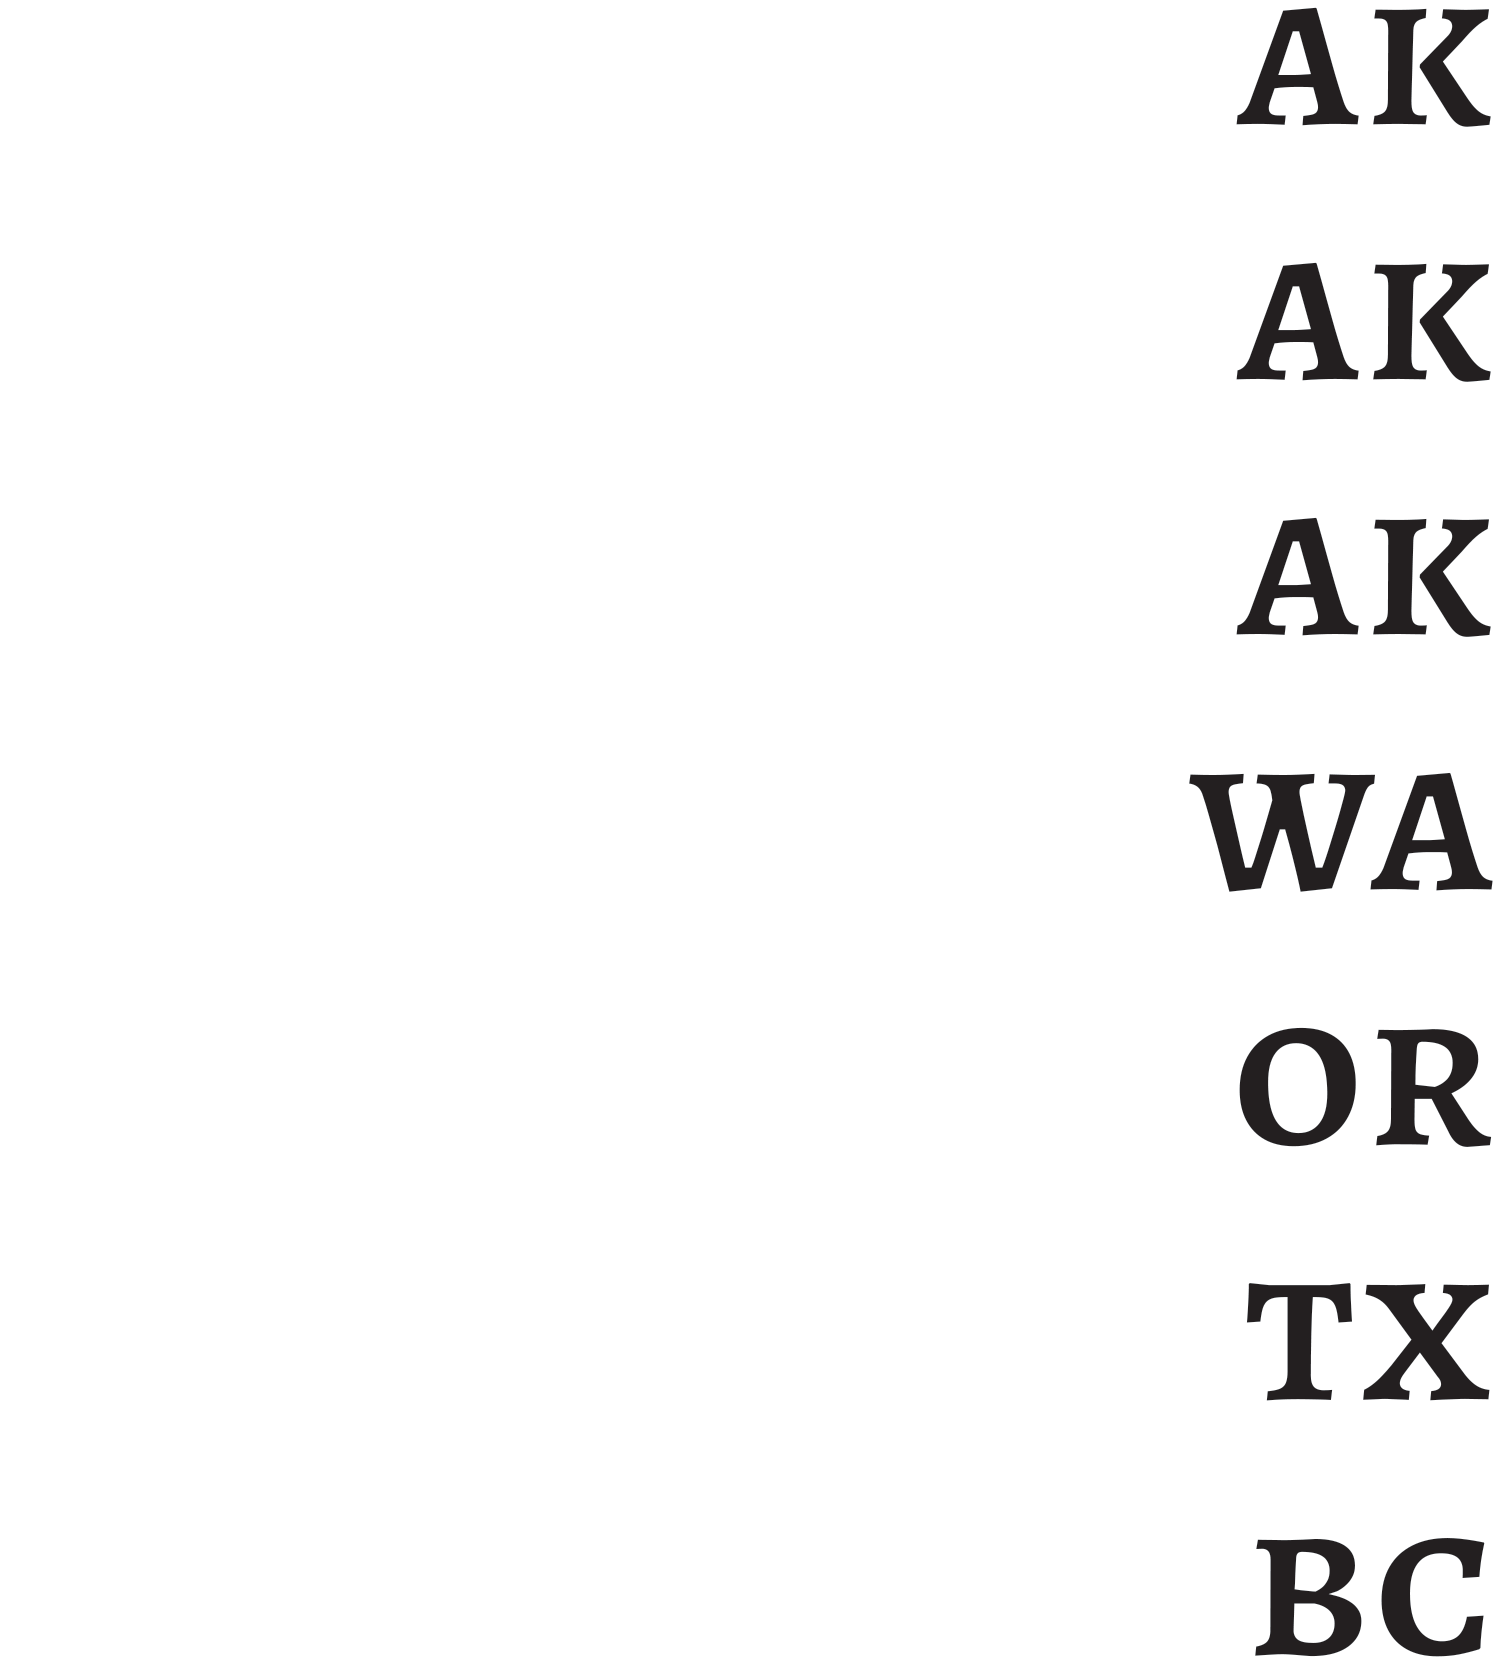 Anchorage AK, Palmer AK, Juneau AK, Seattle WA, Portland OR, Houston TX, Vancouver BC